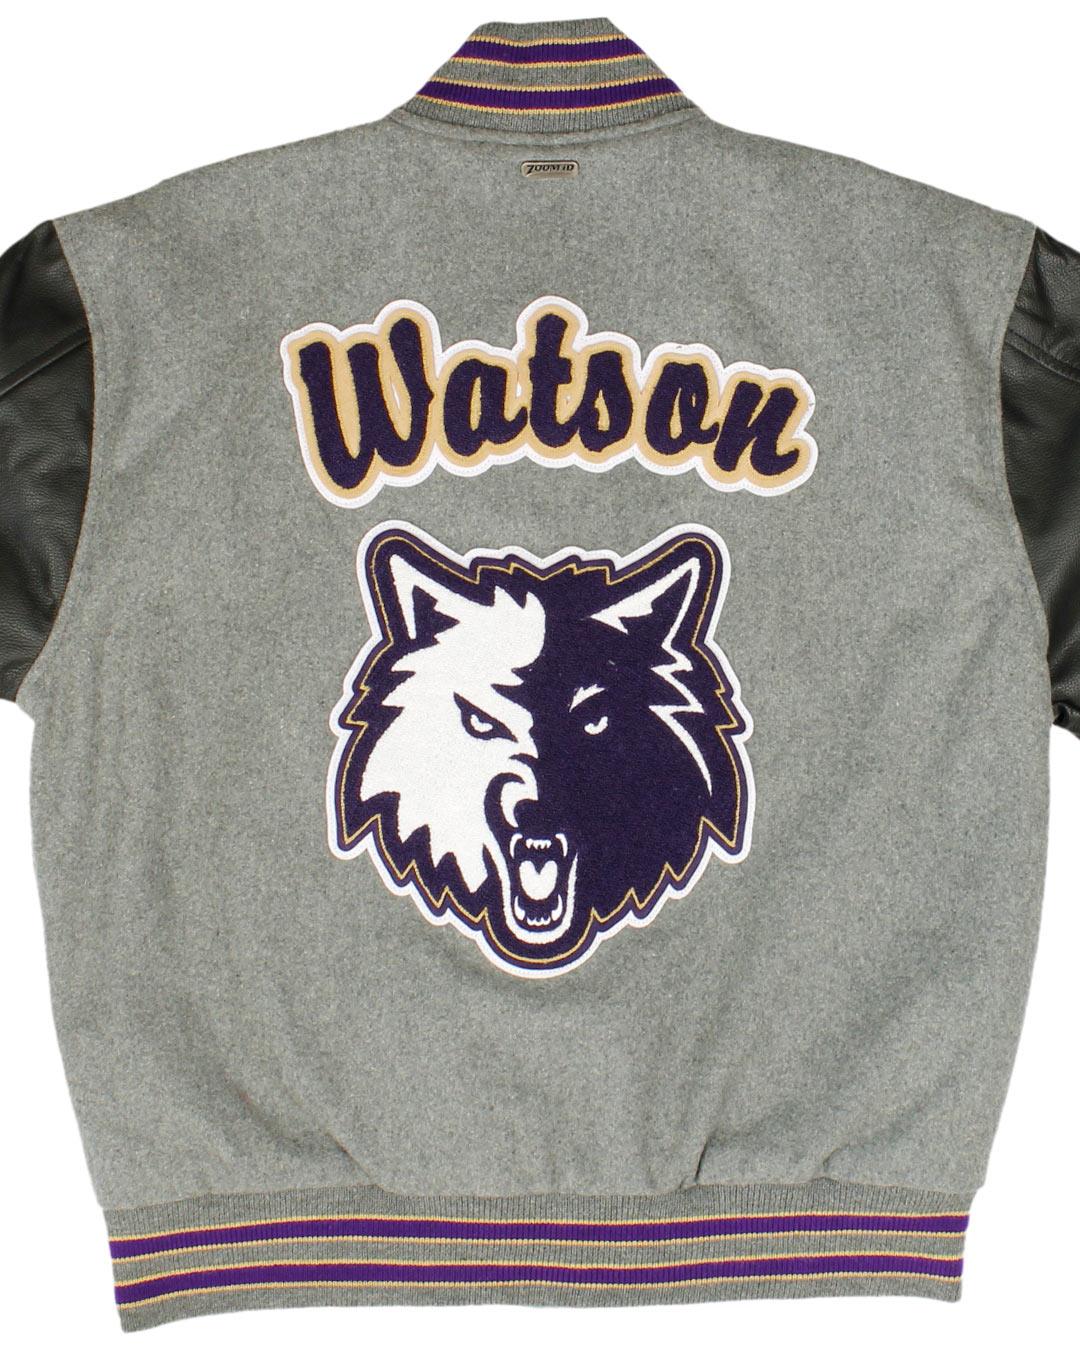 Goldendale High School Timberwolves Letterman Jacket, Goldendale WA - Back